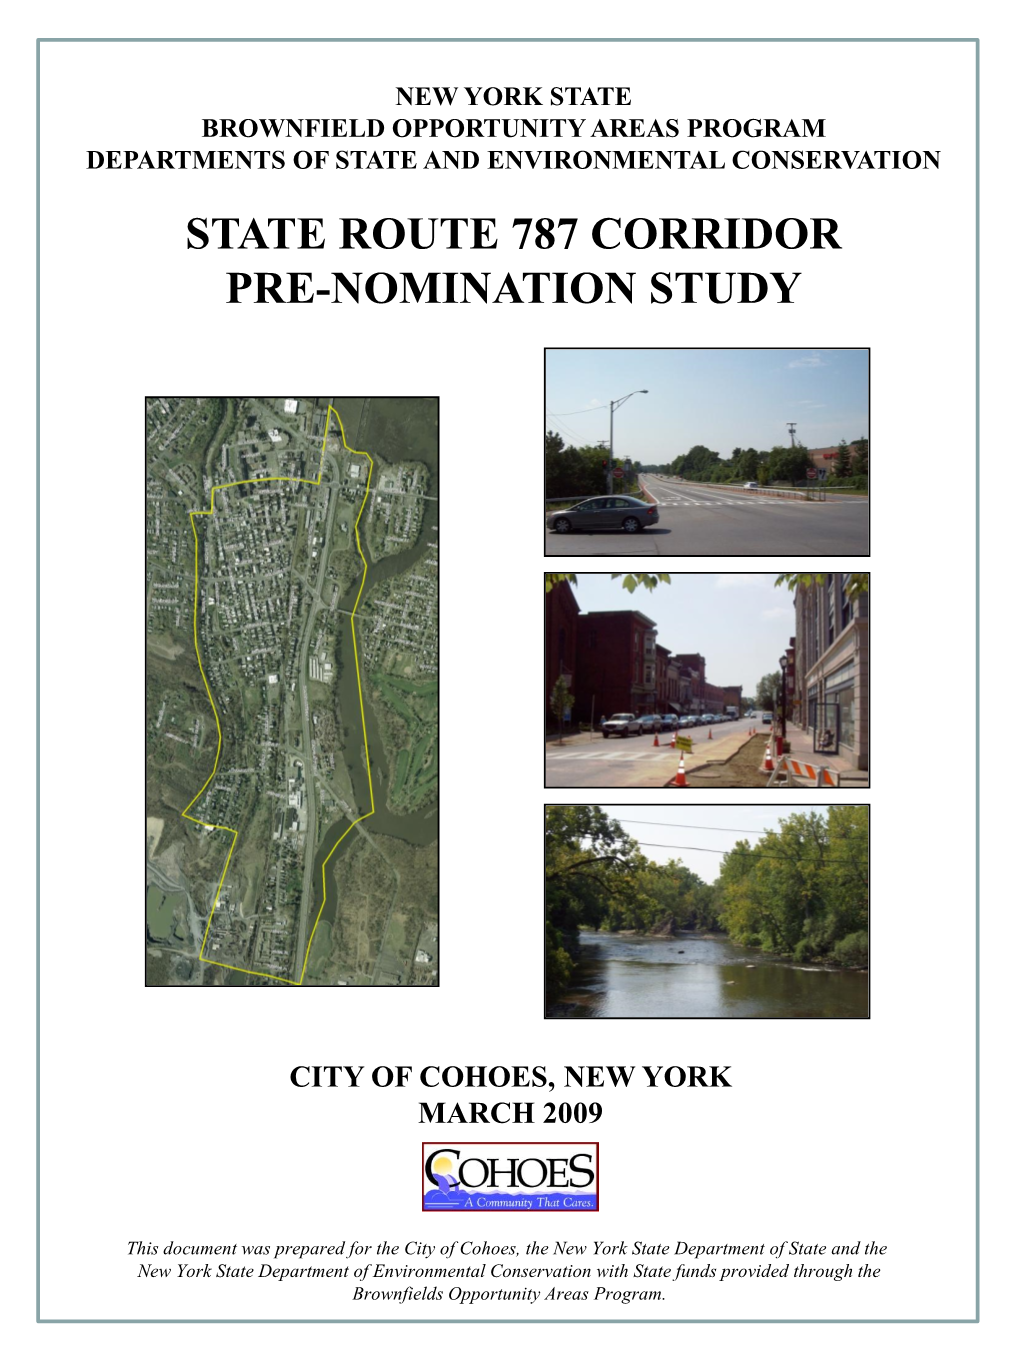 State Route 787 Corridor Pre-Nomination Study